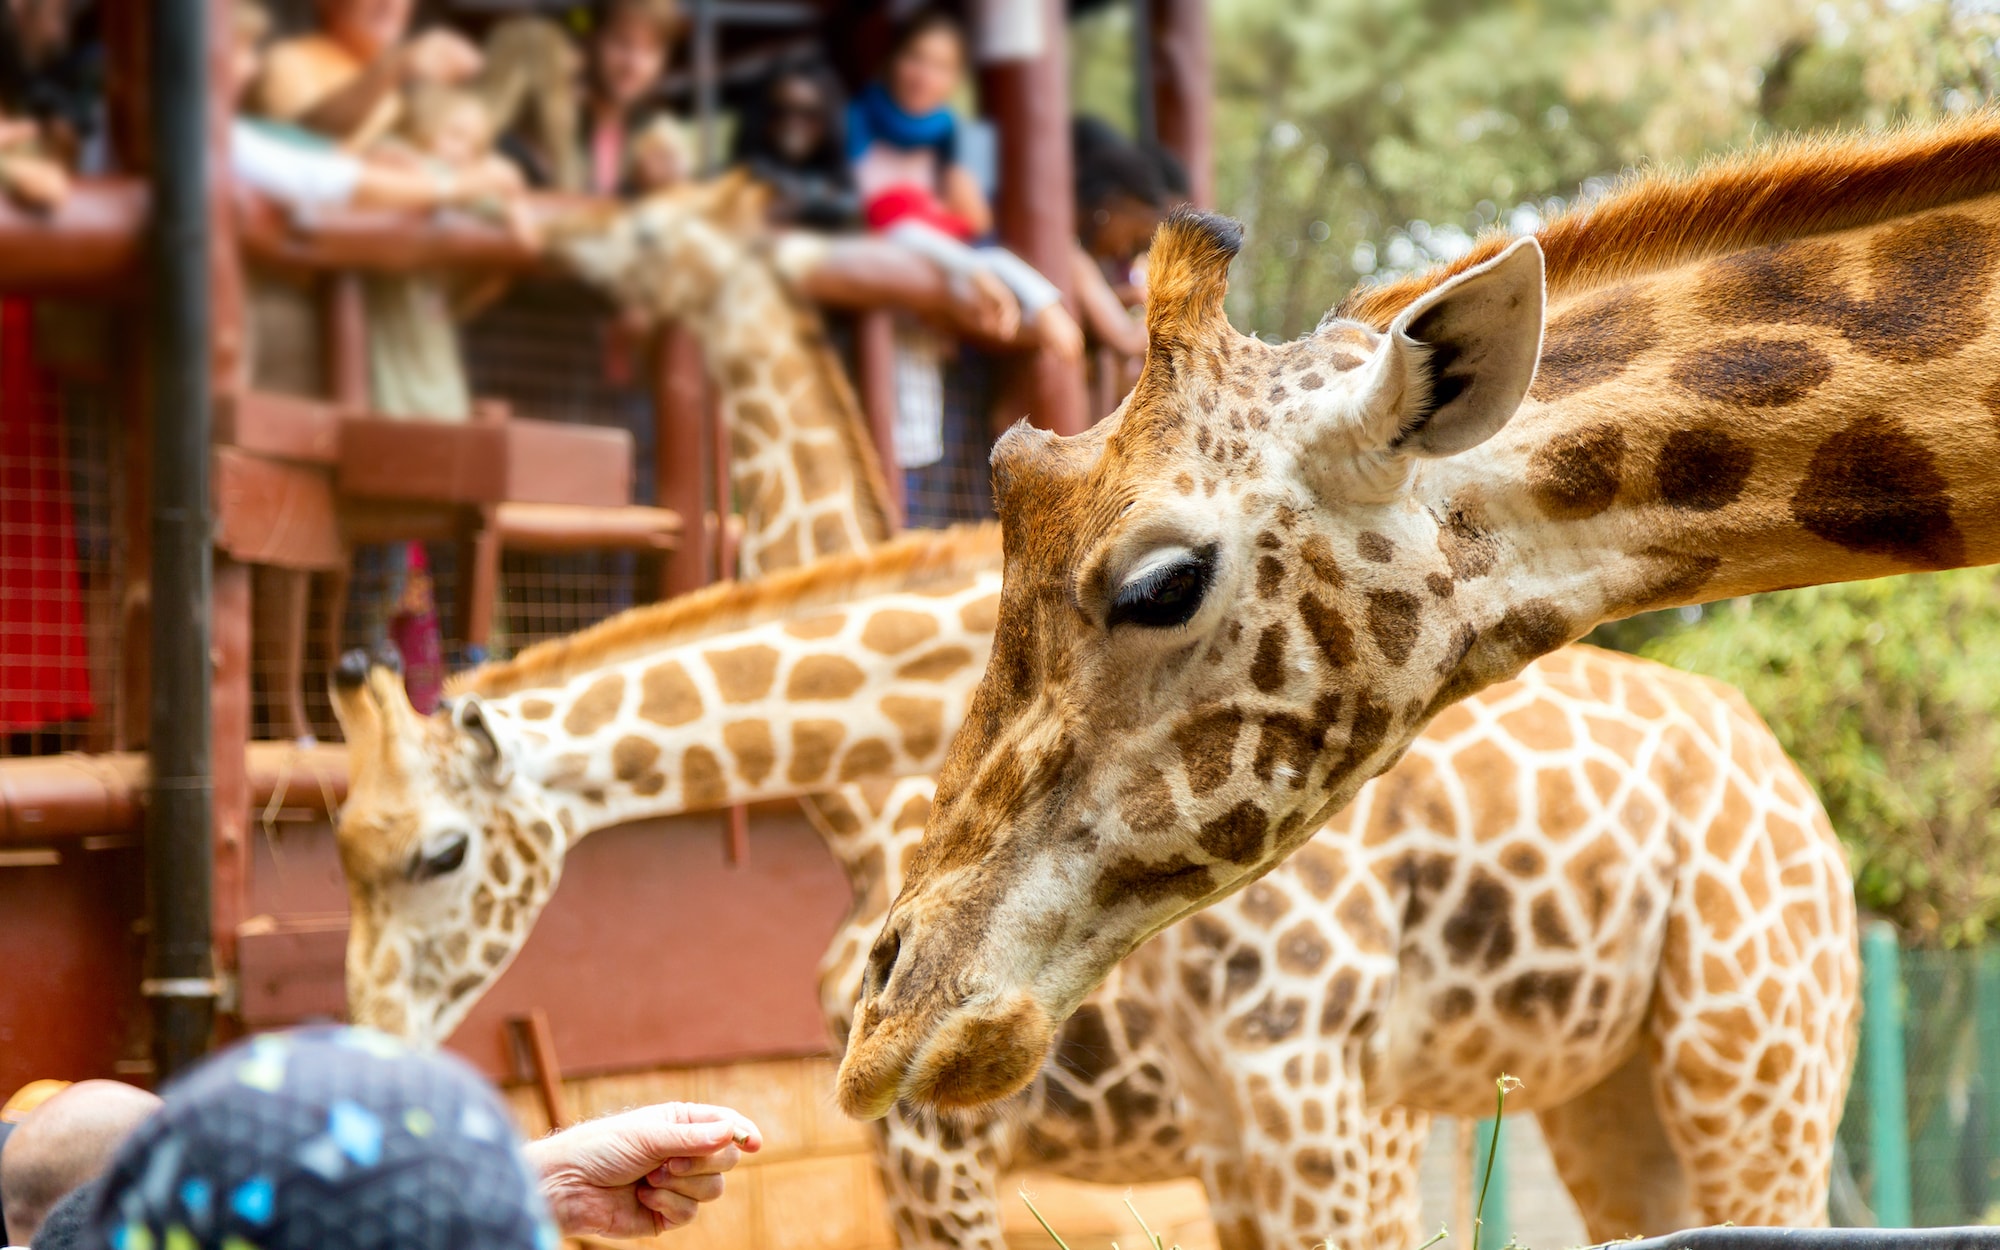 visitors look at three giraffes